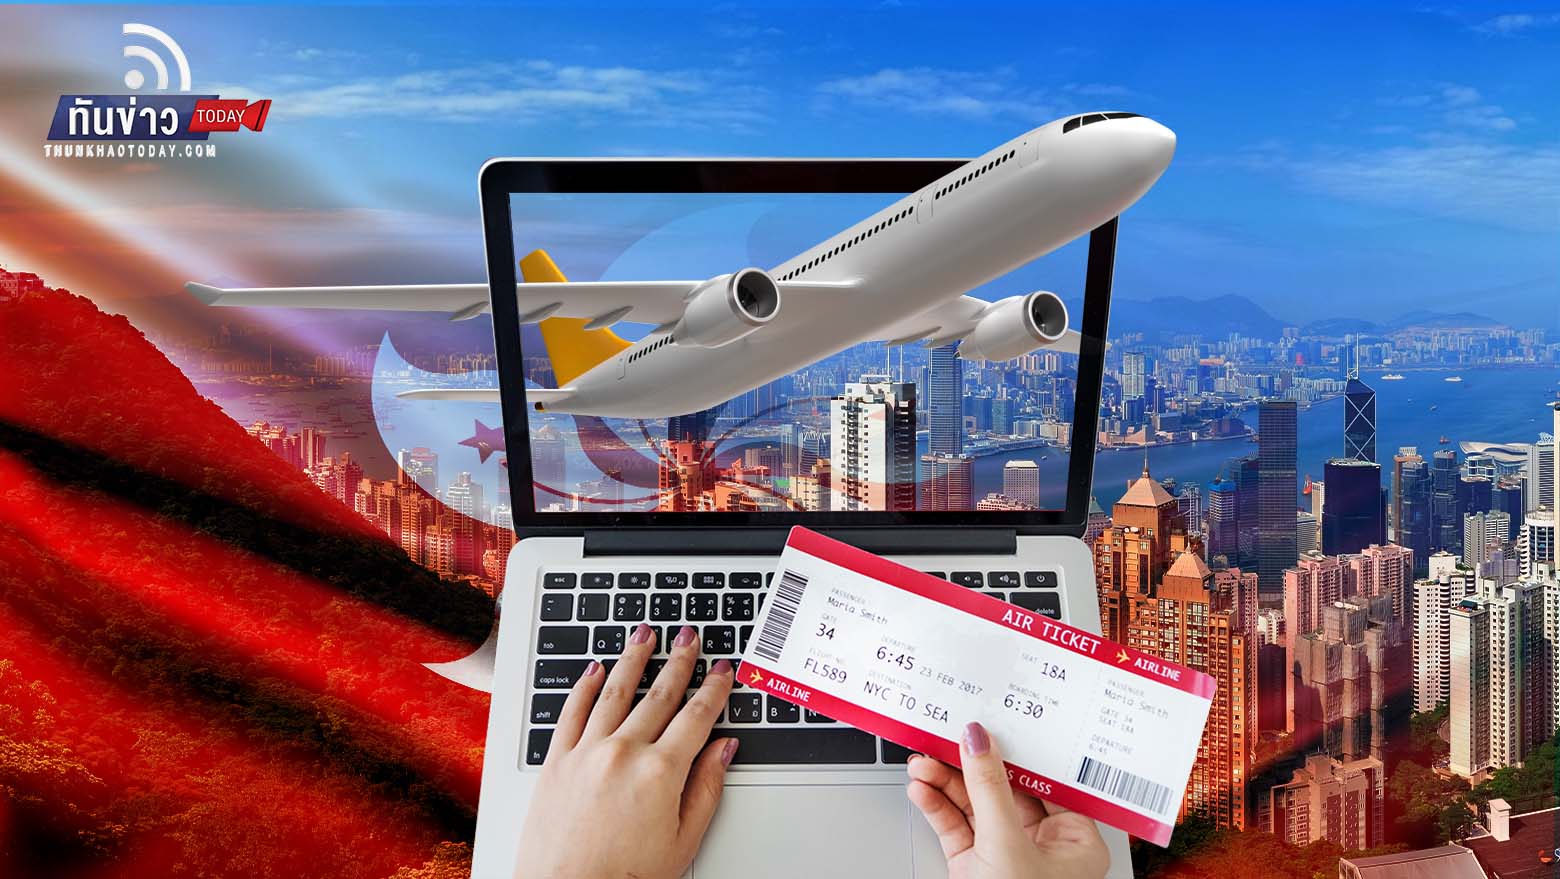 เที่ยวฮ่องกงเปิดประเทศจัดหนัก เตรียมแจกตั๋วเครื่องบิน 5 แสนเที่ยว! หวังดูดนักเดินทาง